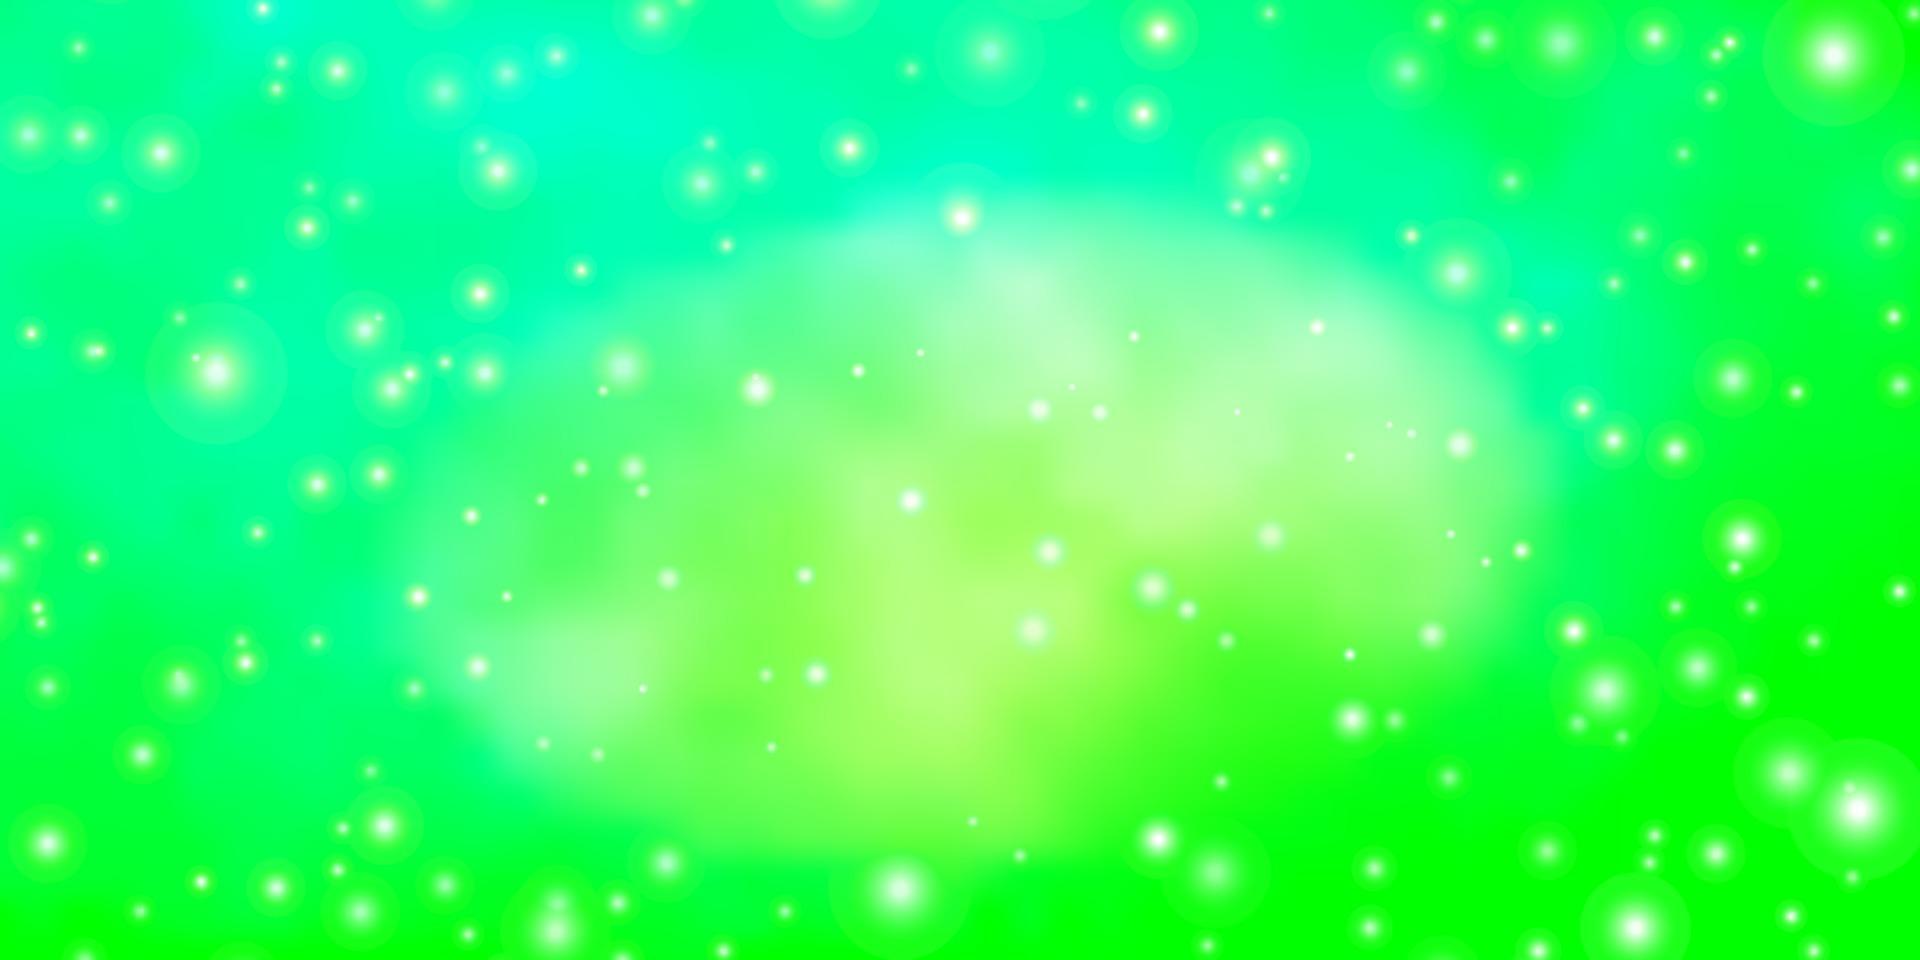 Fondo de vector verde claro con estrellas pequeñas y grandes.